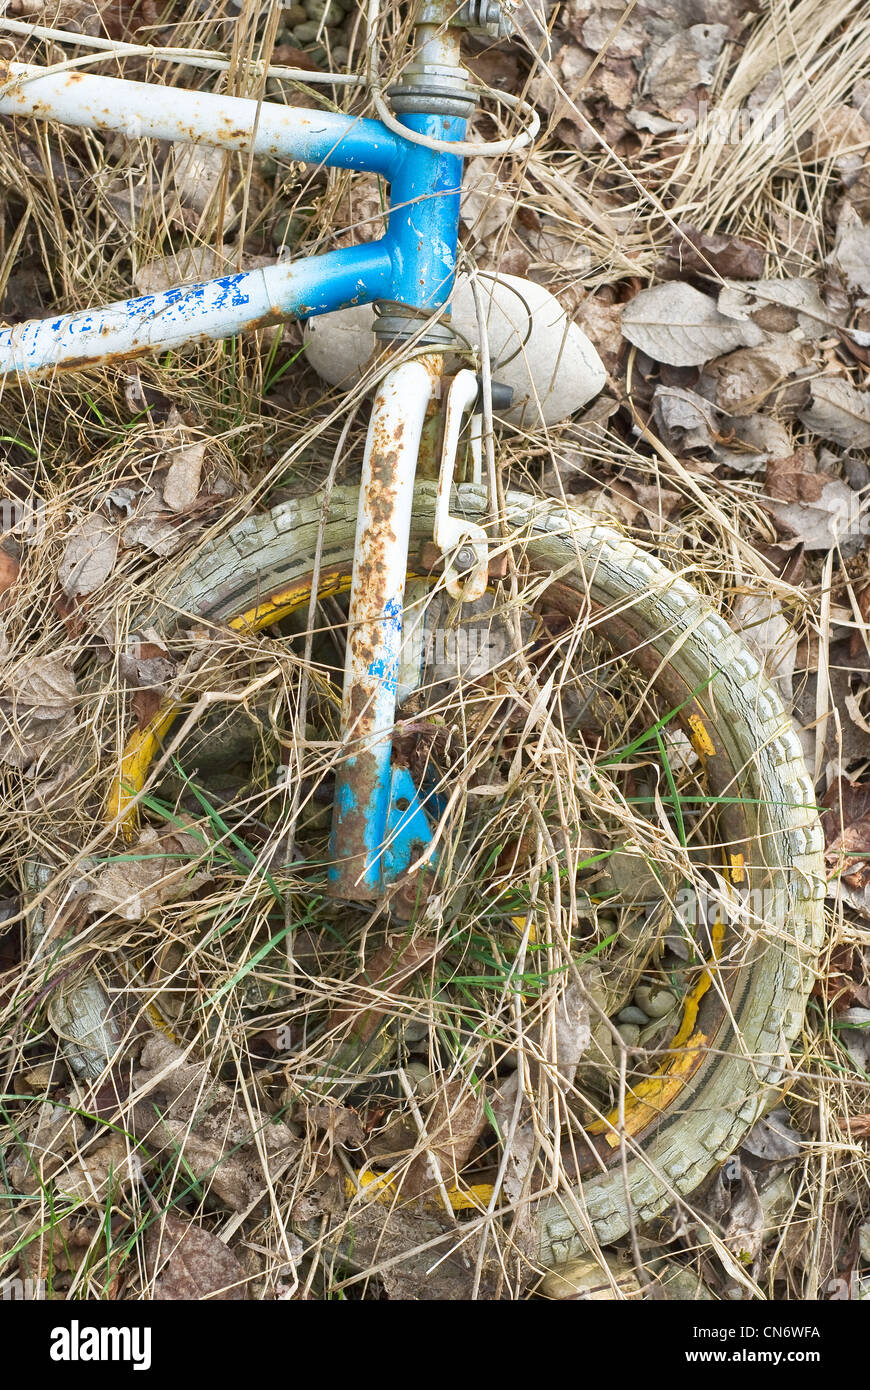 Vecchio e abbandonato Bike come quotidiano inquinamento ambientale Foto Stock